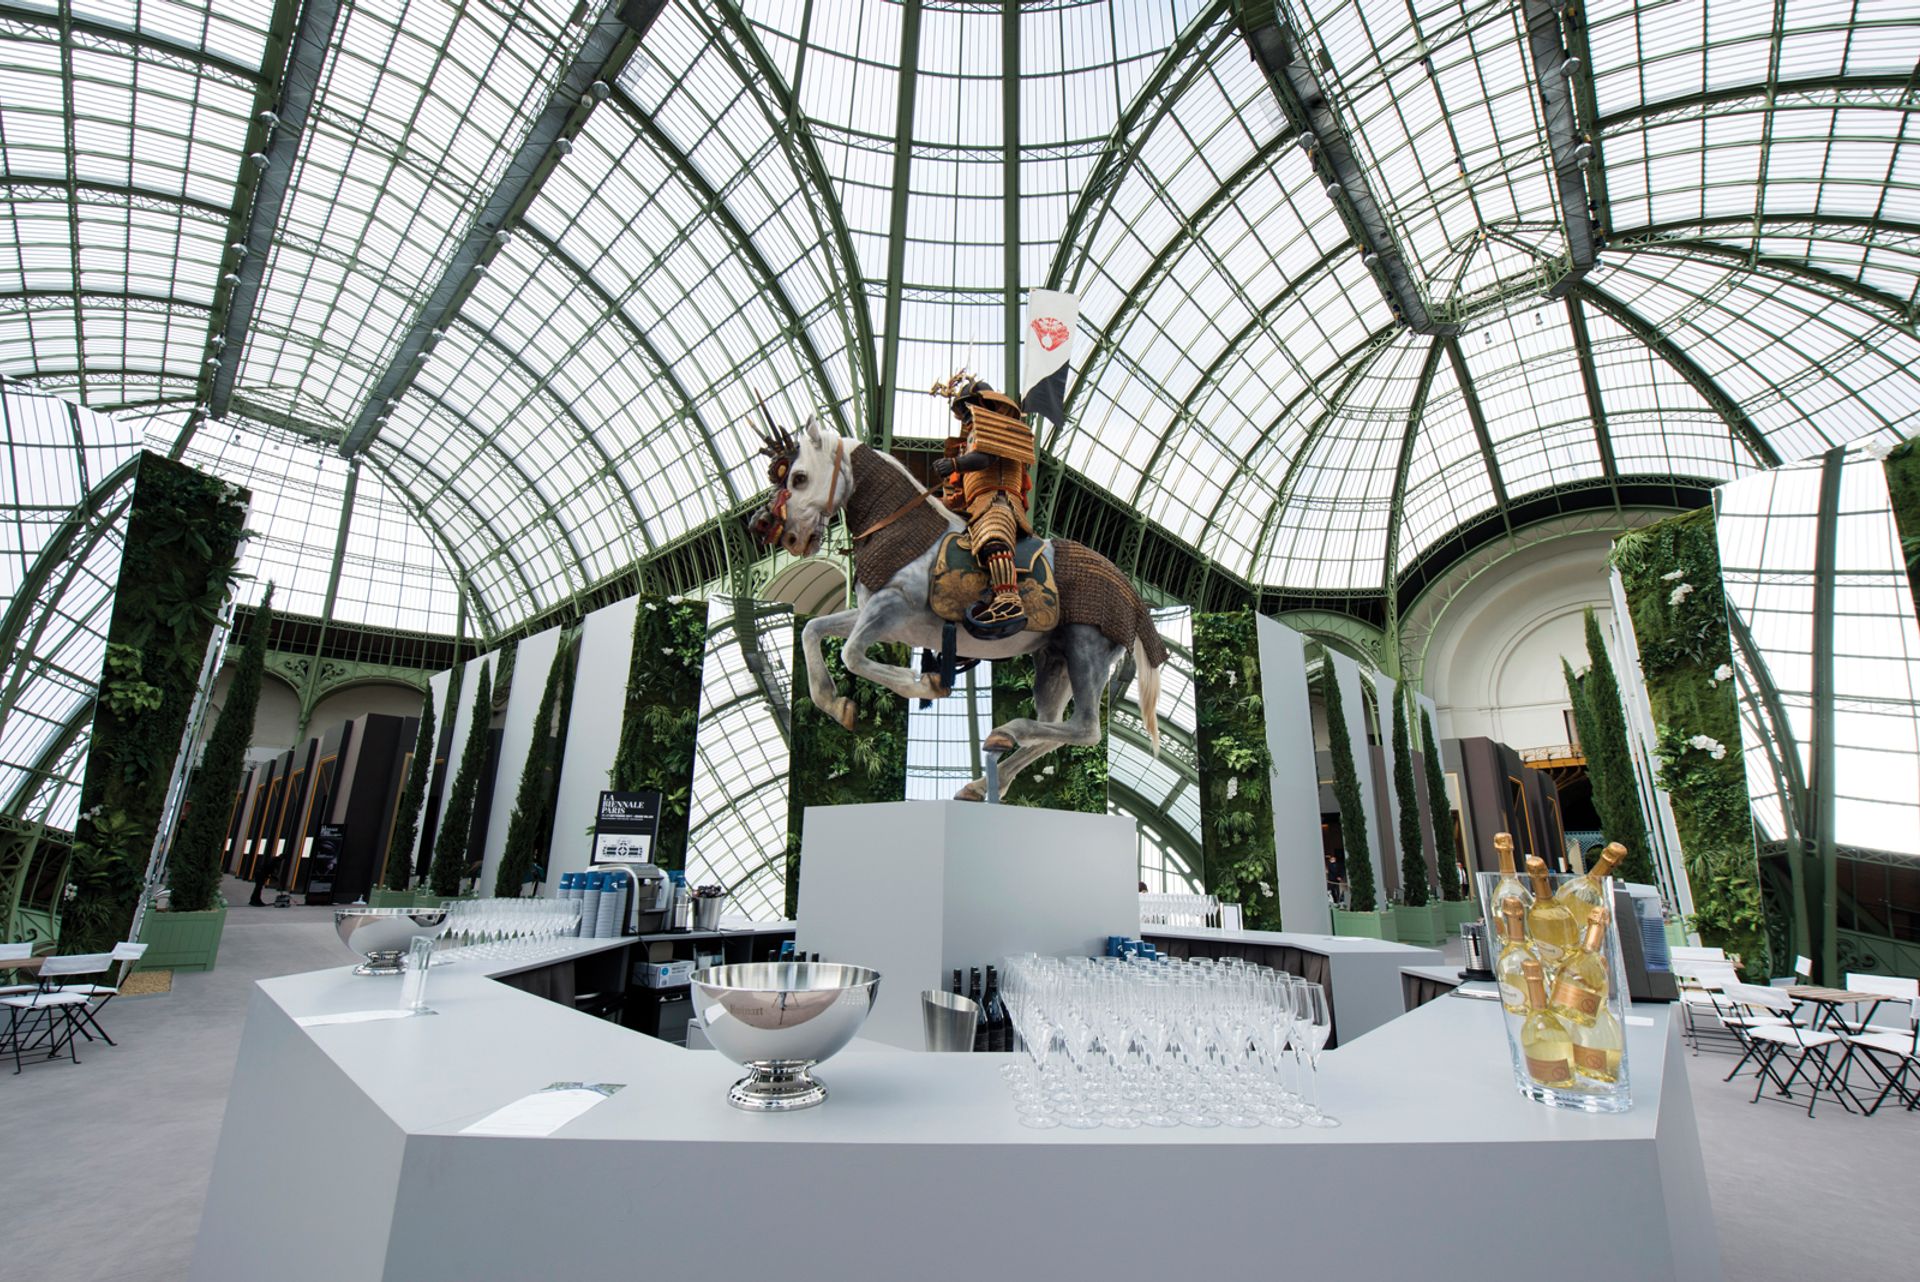 It hasn't been an easy ride for La Biennale Paris La Biennale Paris